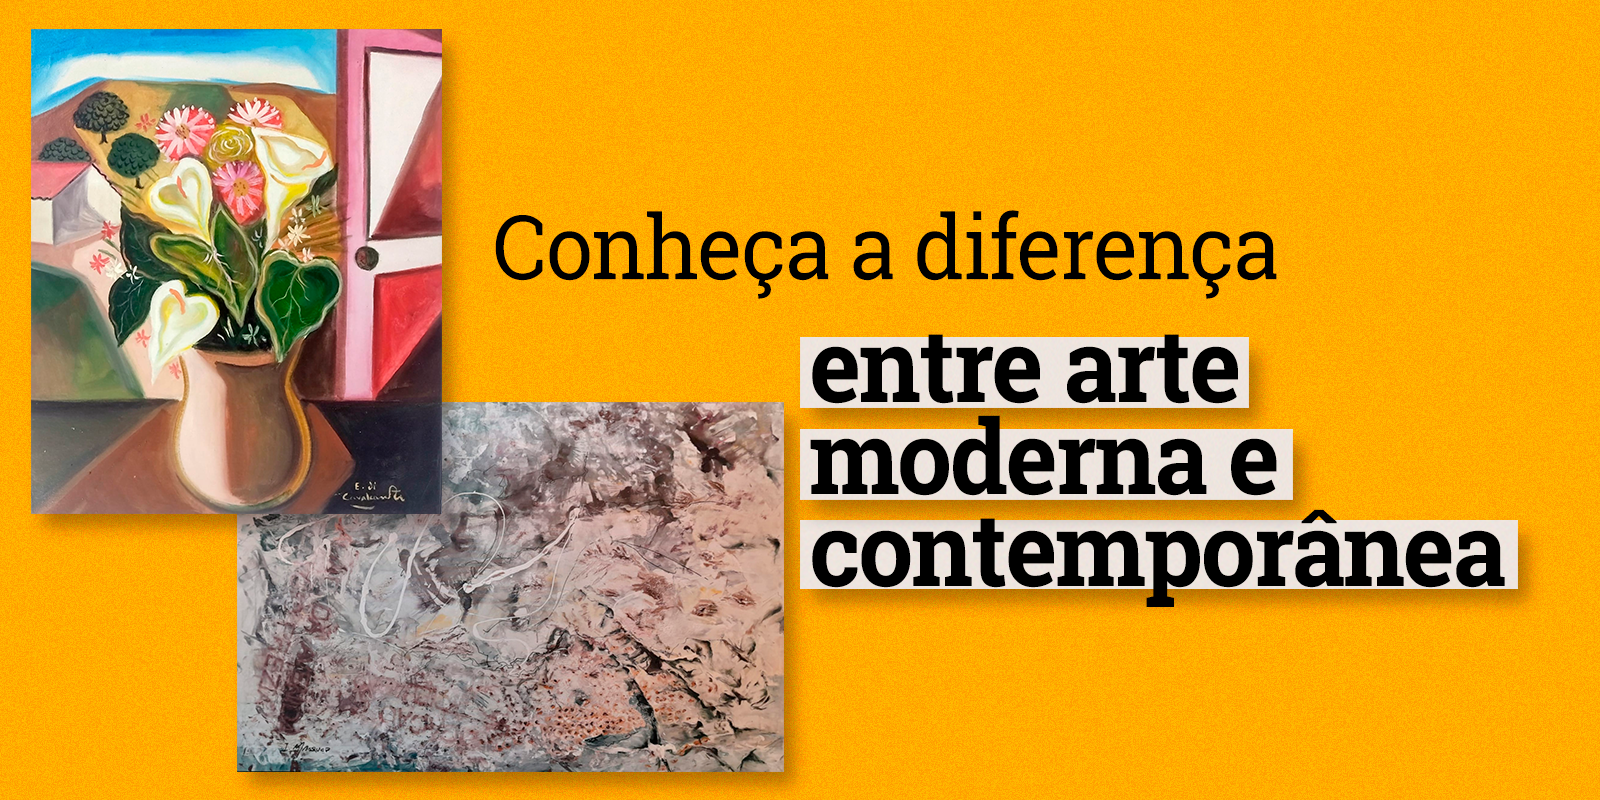 Conheça a diferença entre arte moderna e contemporânea